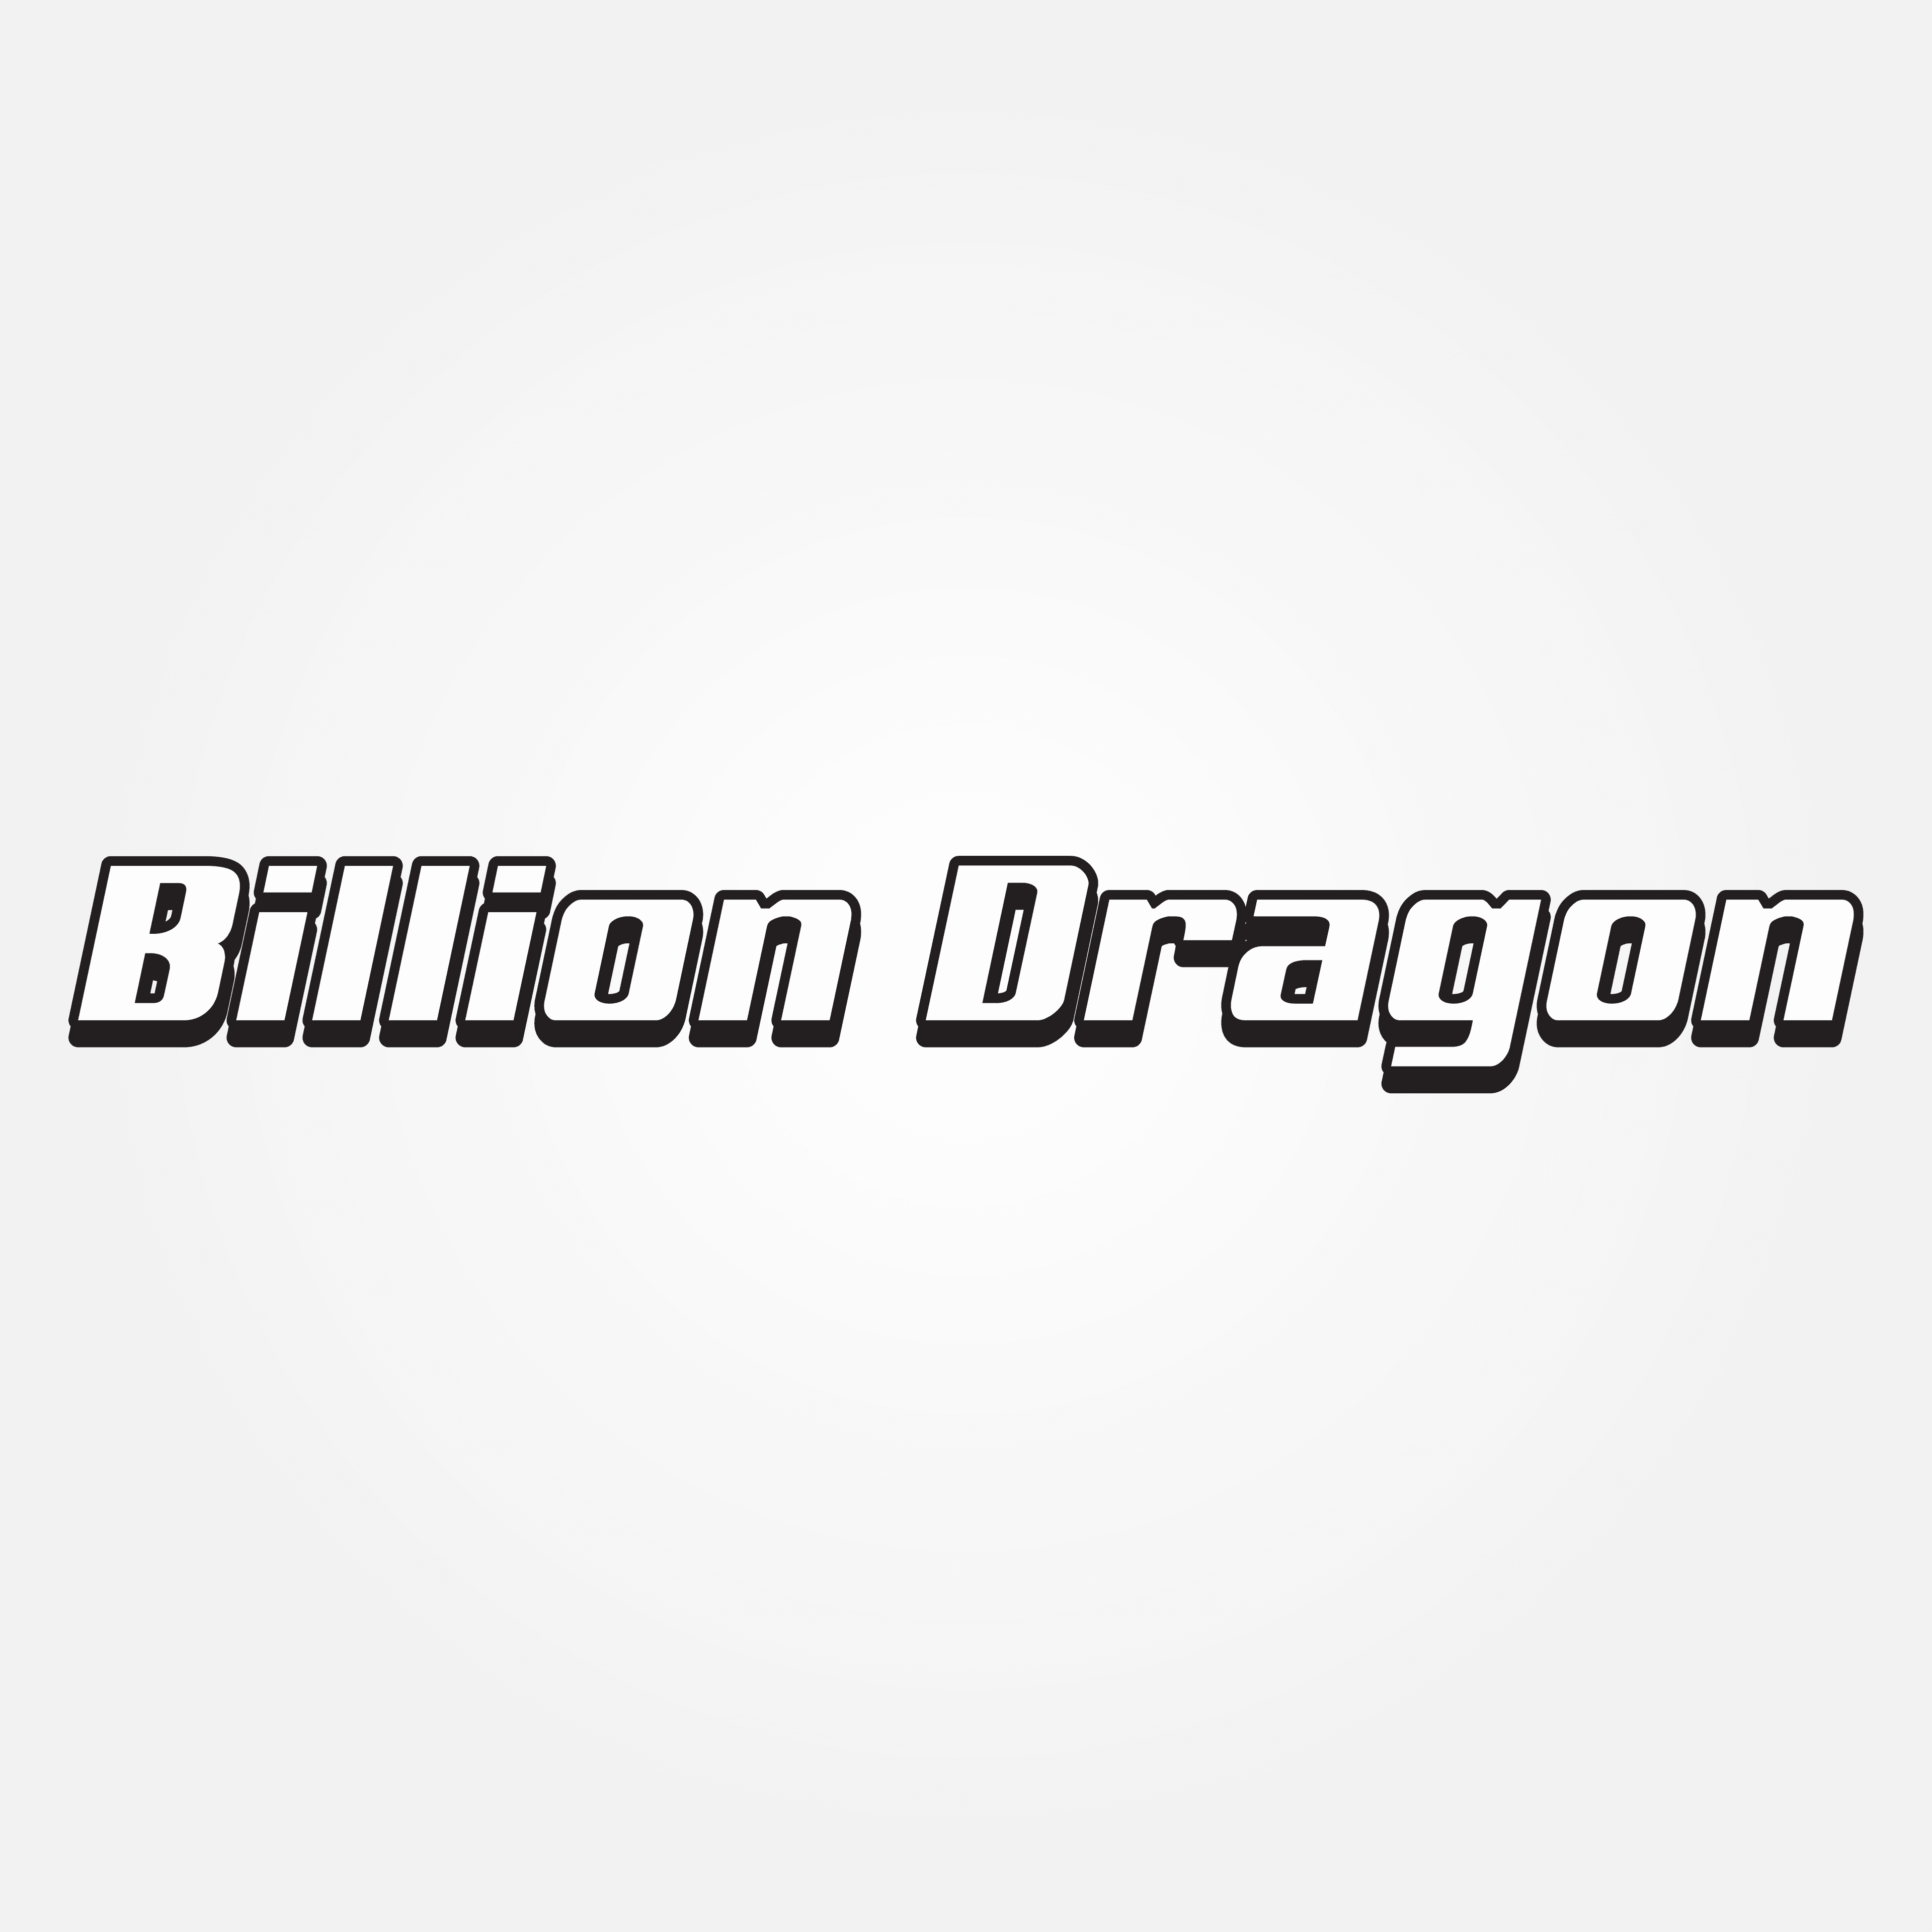 Billion Dragon Studio